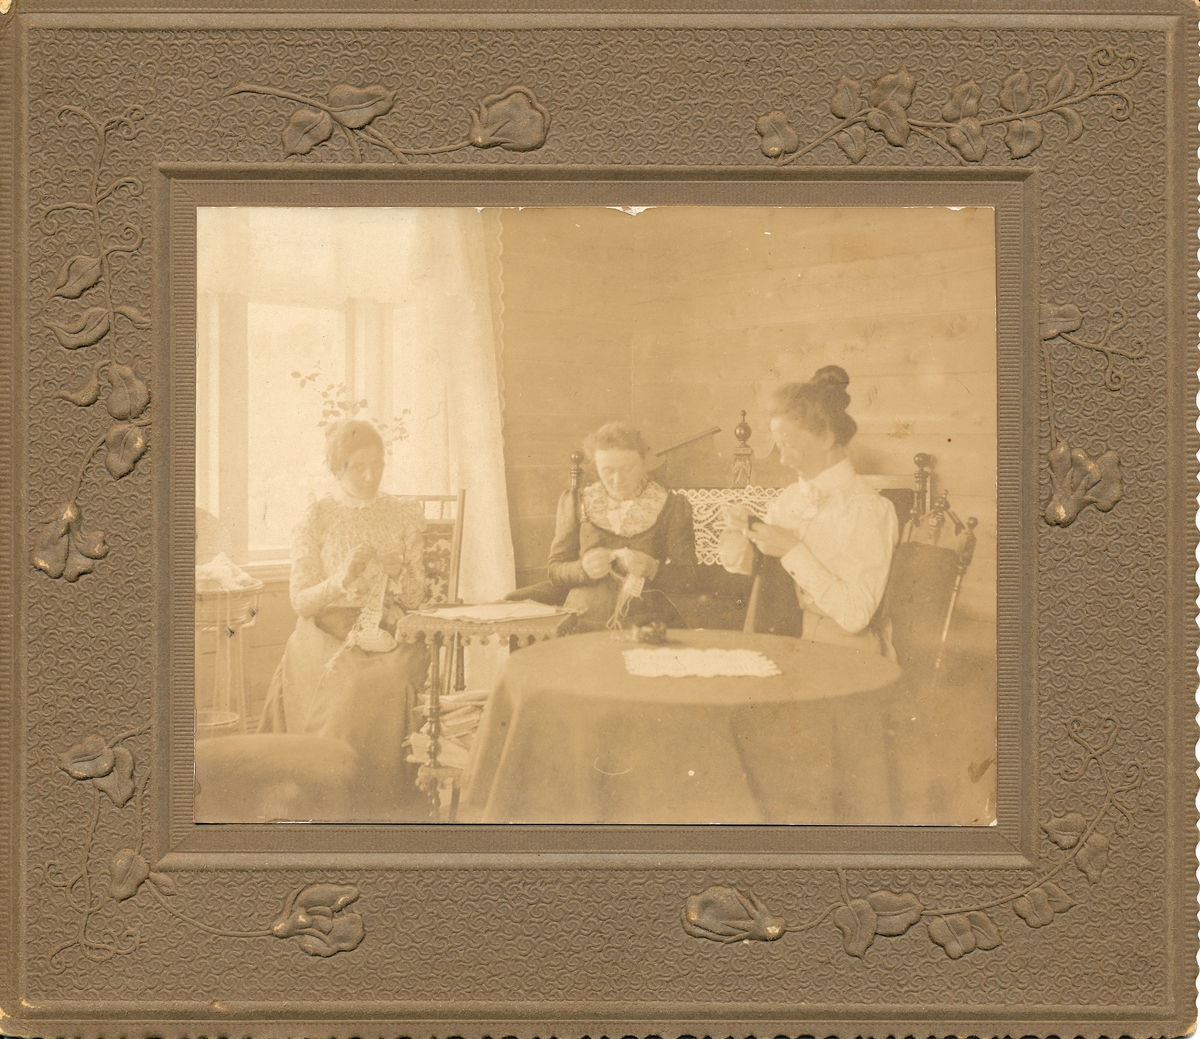 Gruppe kvinner. Tre kvinner sitter med håndarbeid (broderi eller hekling) ved vindu. Nanna Pedersen, fru Laws, frk. Aabakken. Interiør. Umalte plankevegger.